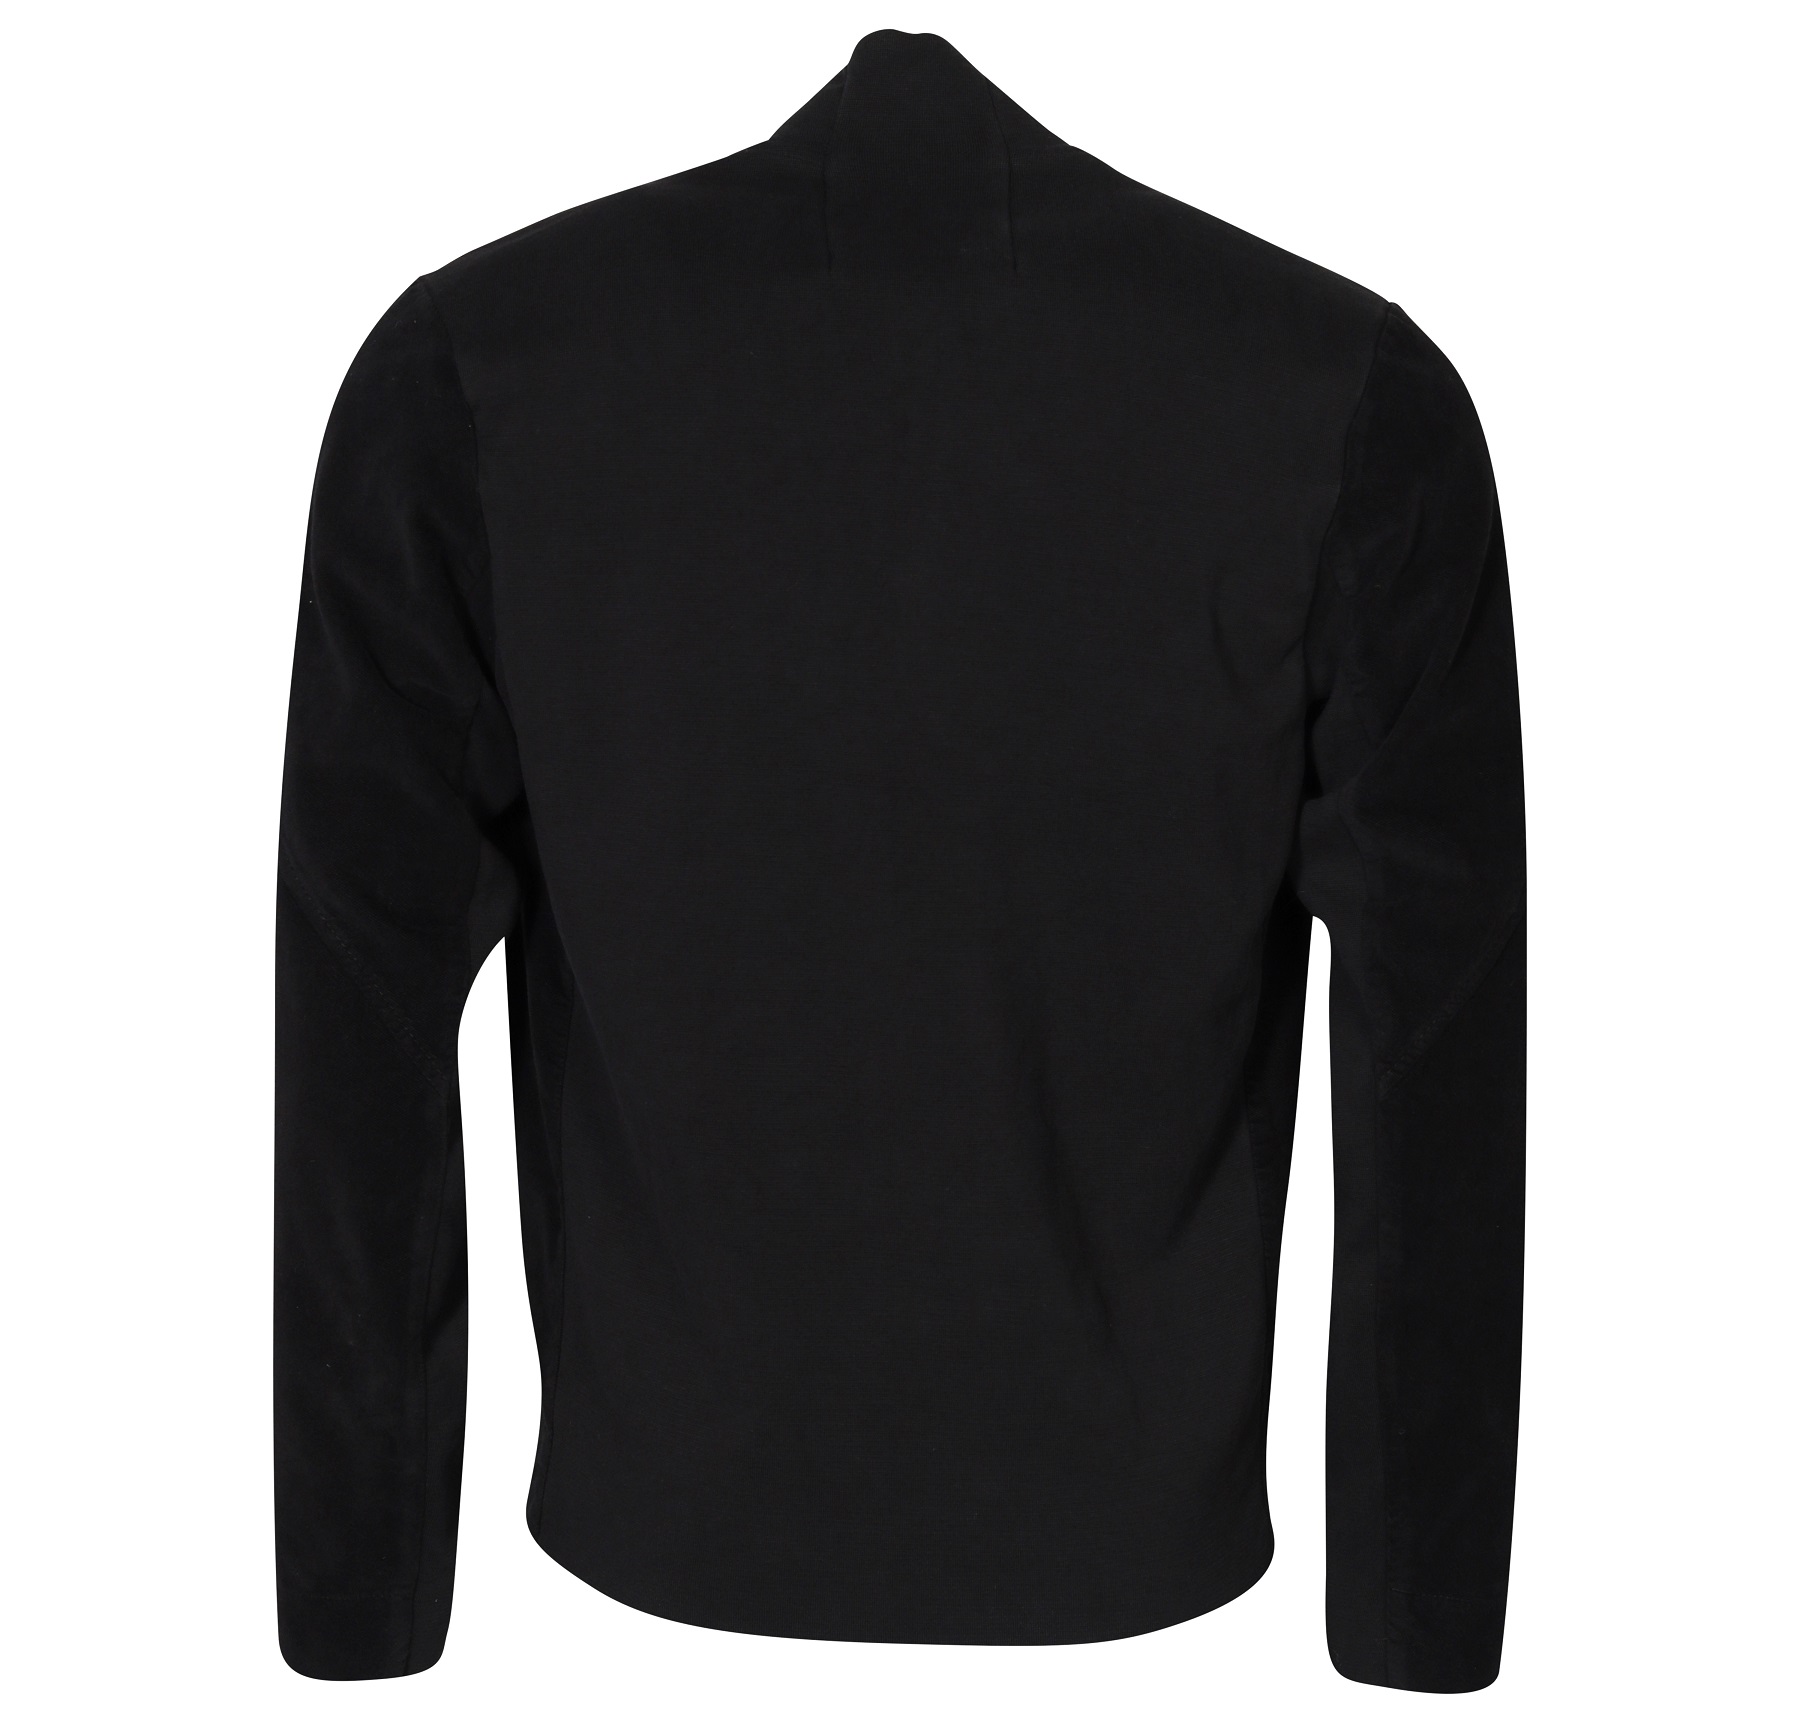 TRANSIT UOMO Cotton Stretch Jacket in Black M